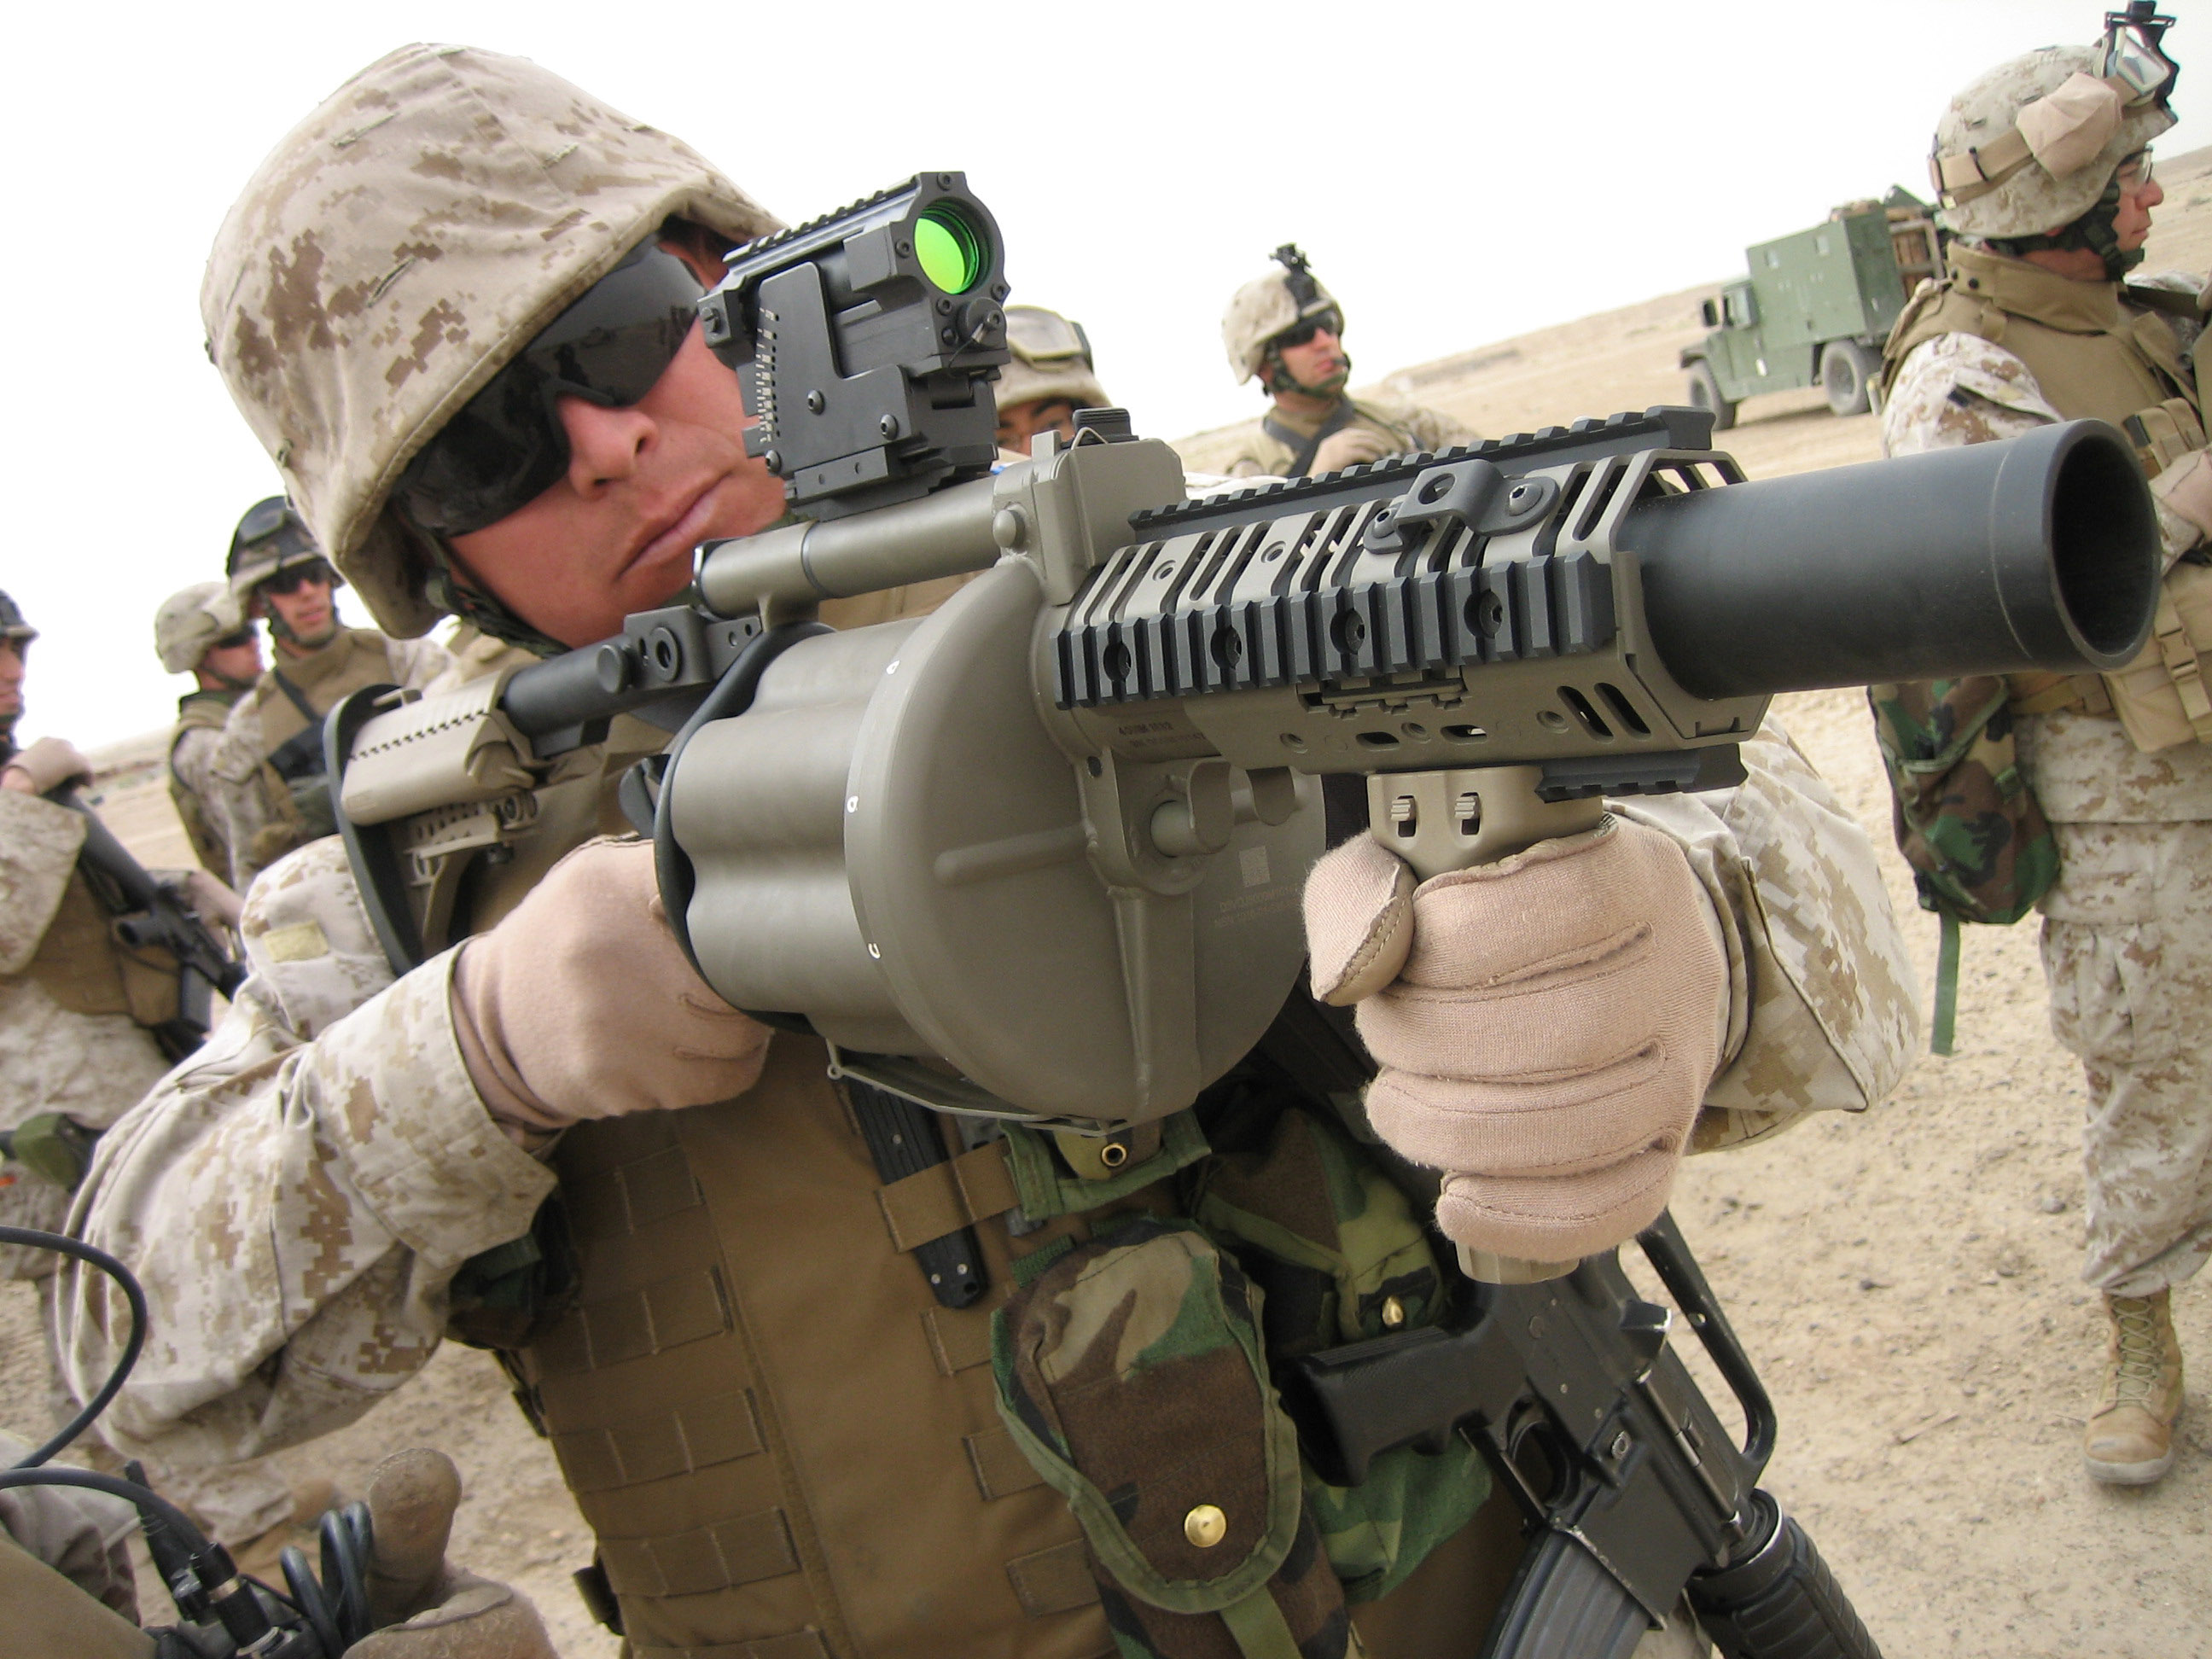 M32 là loại súng phóng lựu liên hoàn được sử dụng rộng rãi trong quân đội Mỹ